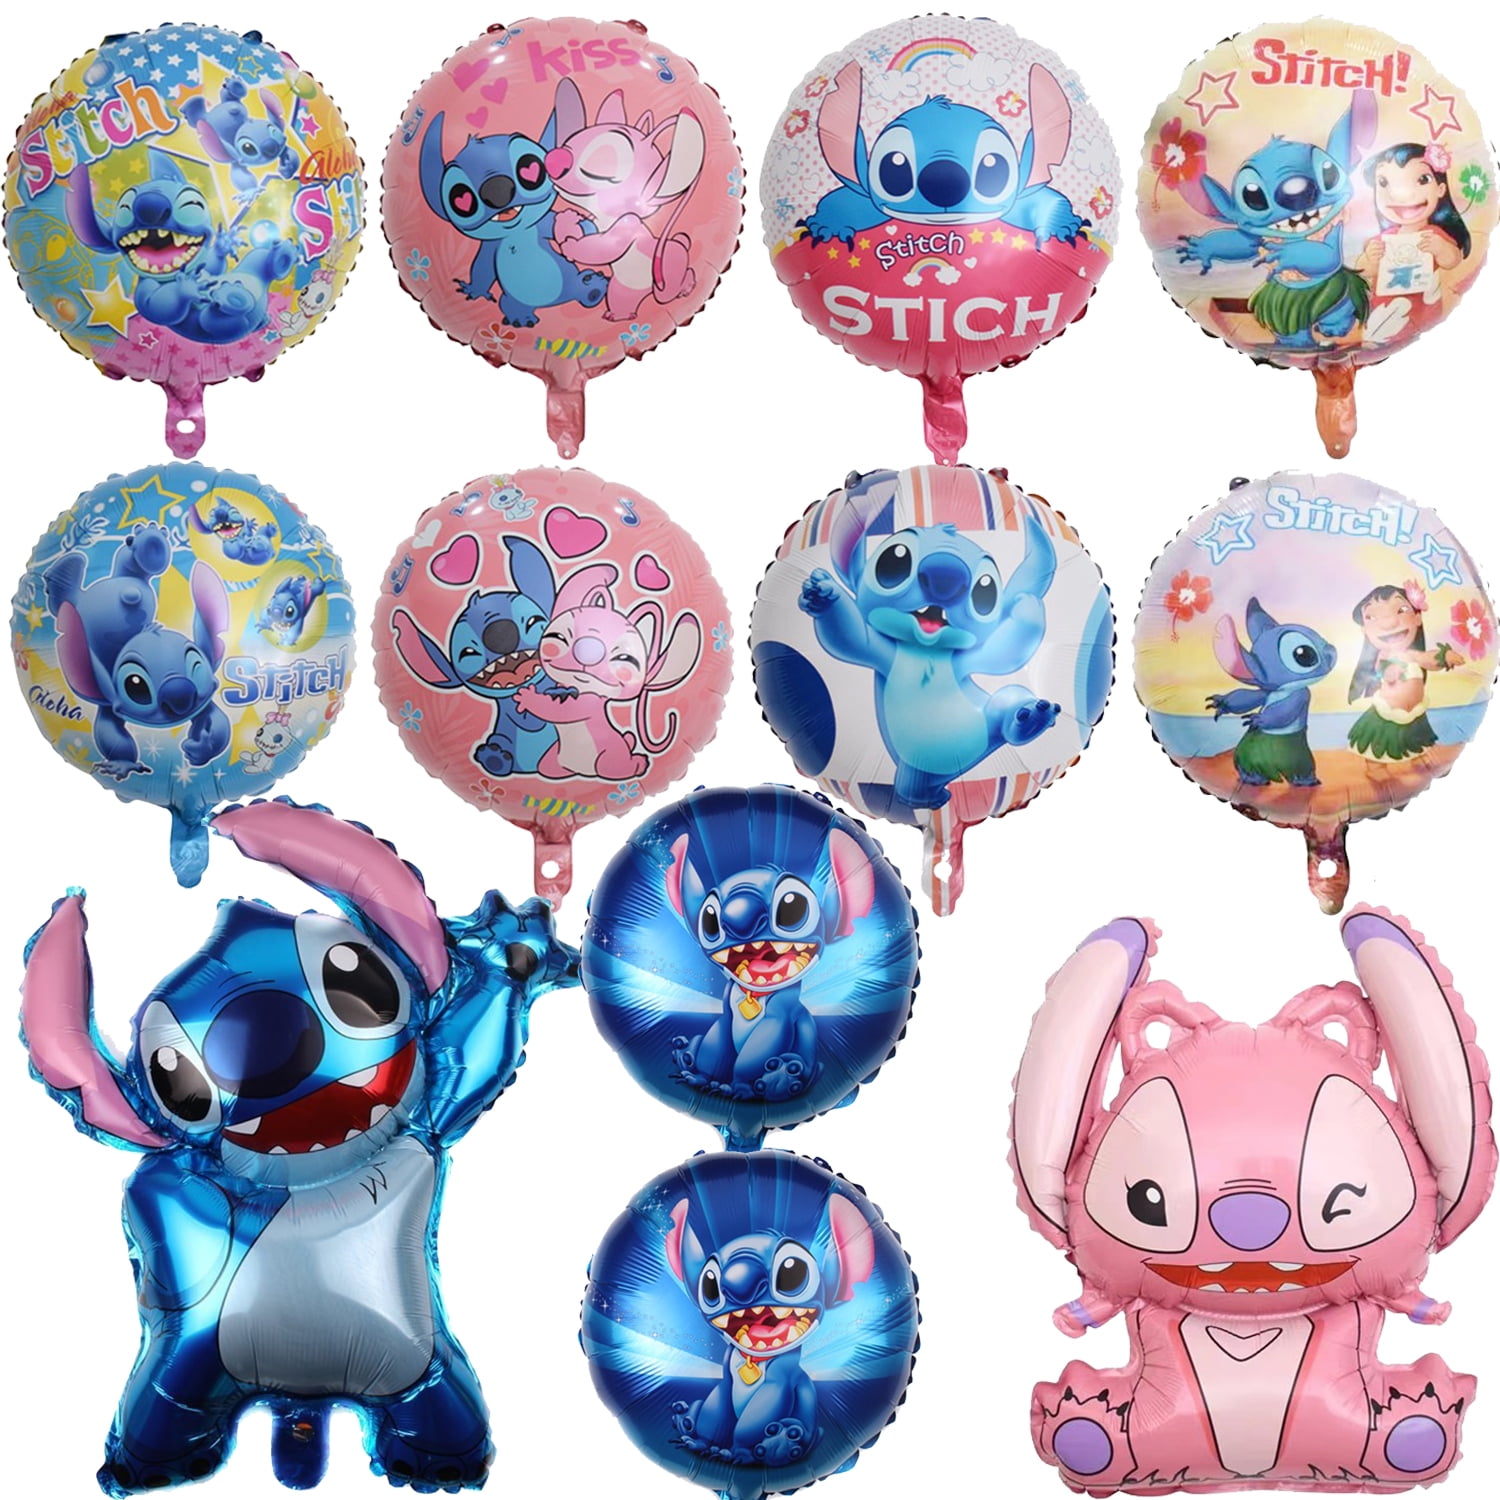 Blue Stitch Foil Balloon Set Party Decoration